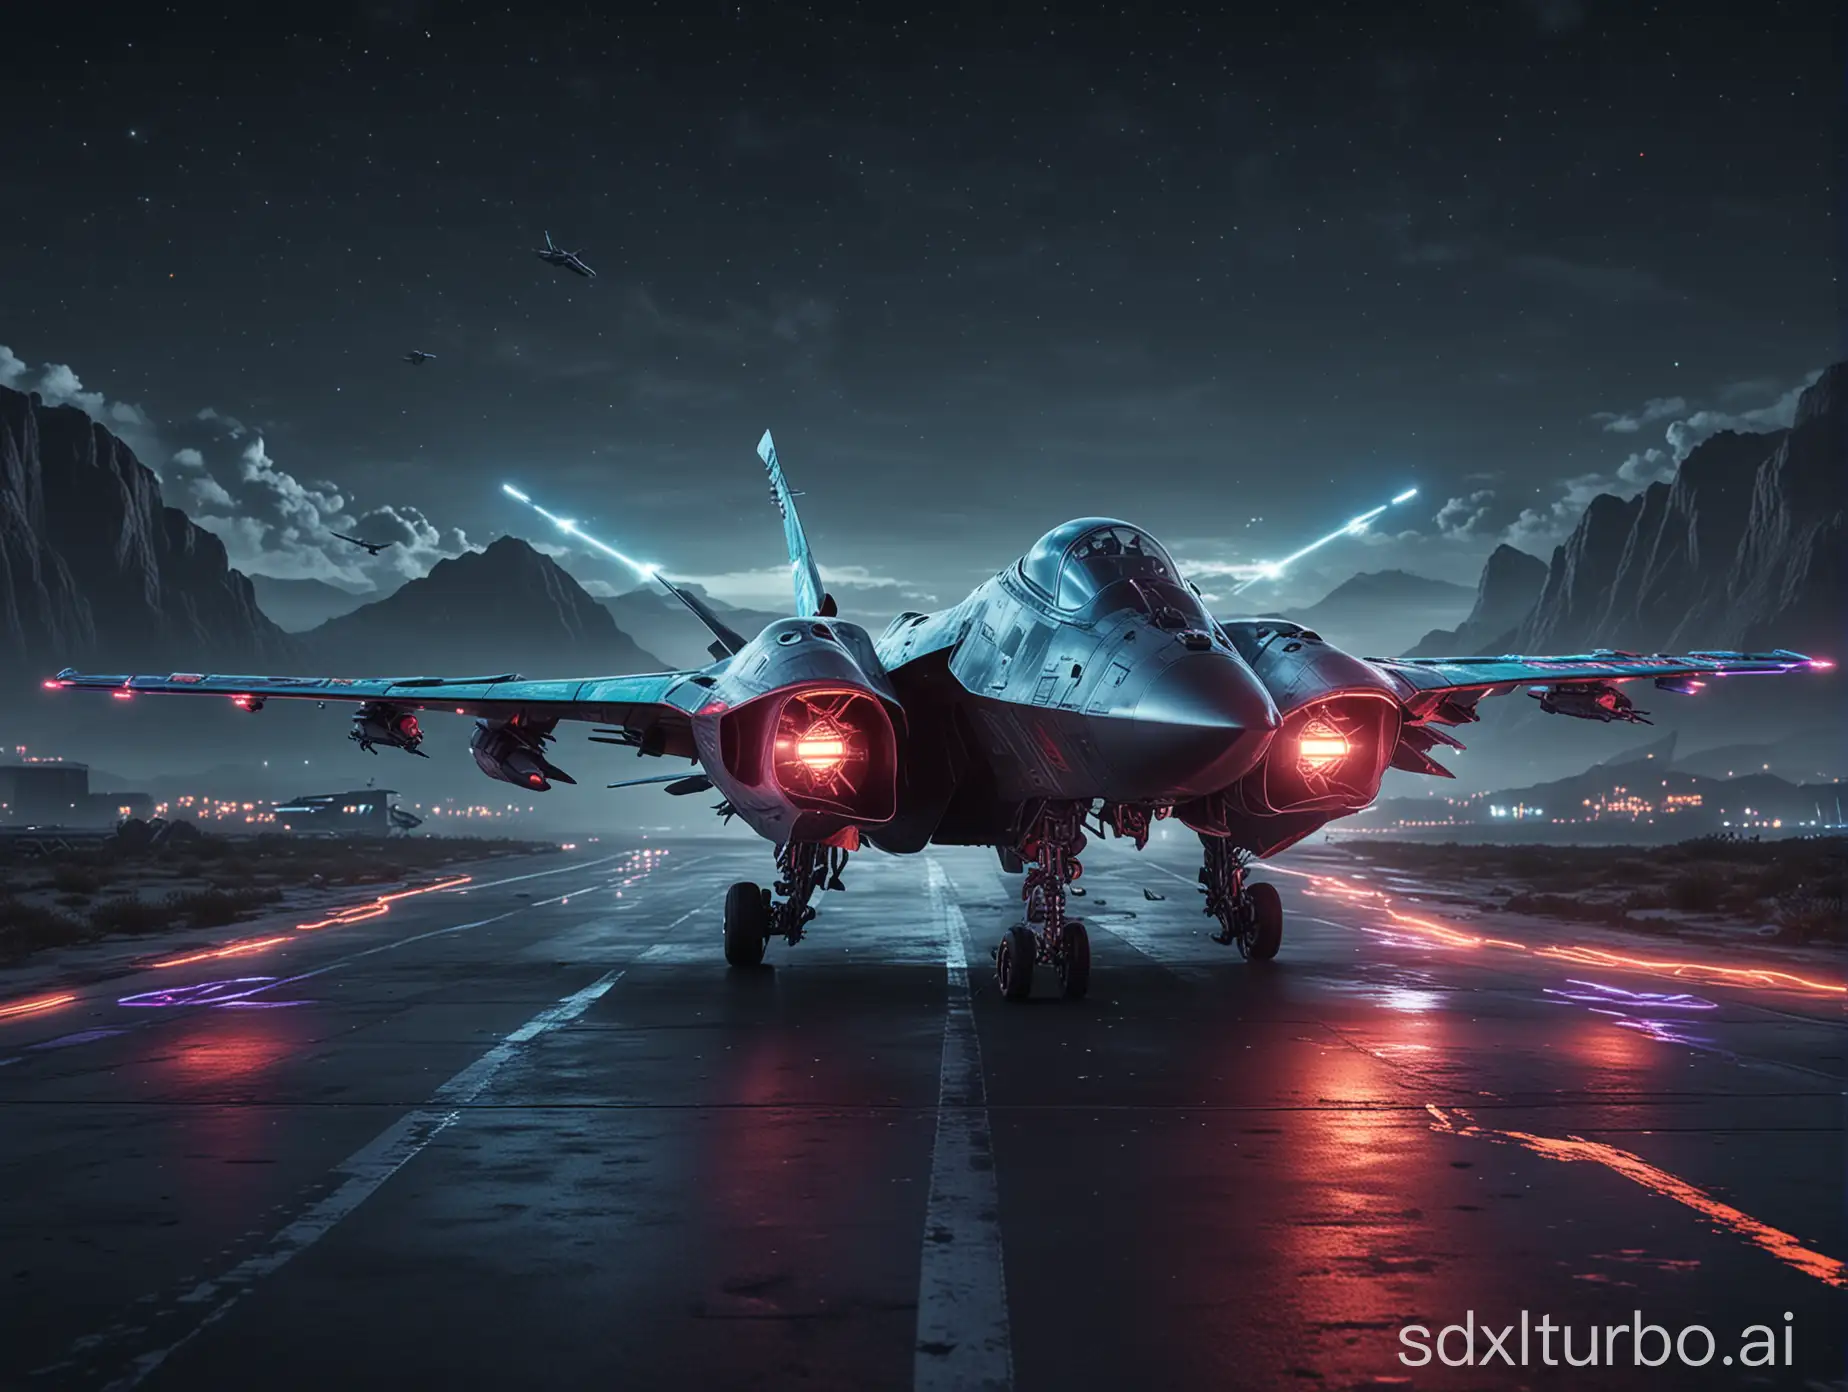 Futuristic-Fighter-Aircraft-Trails-Hyper-Realistic-Night-Scene